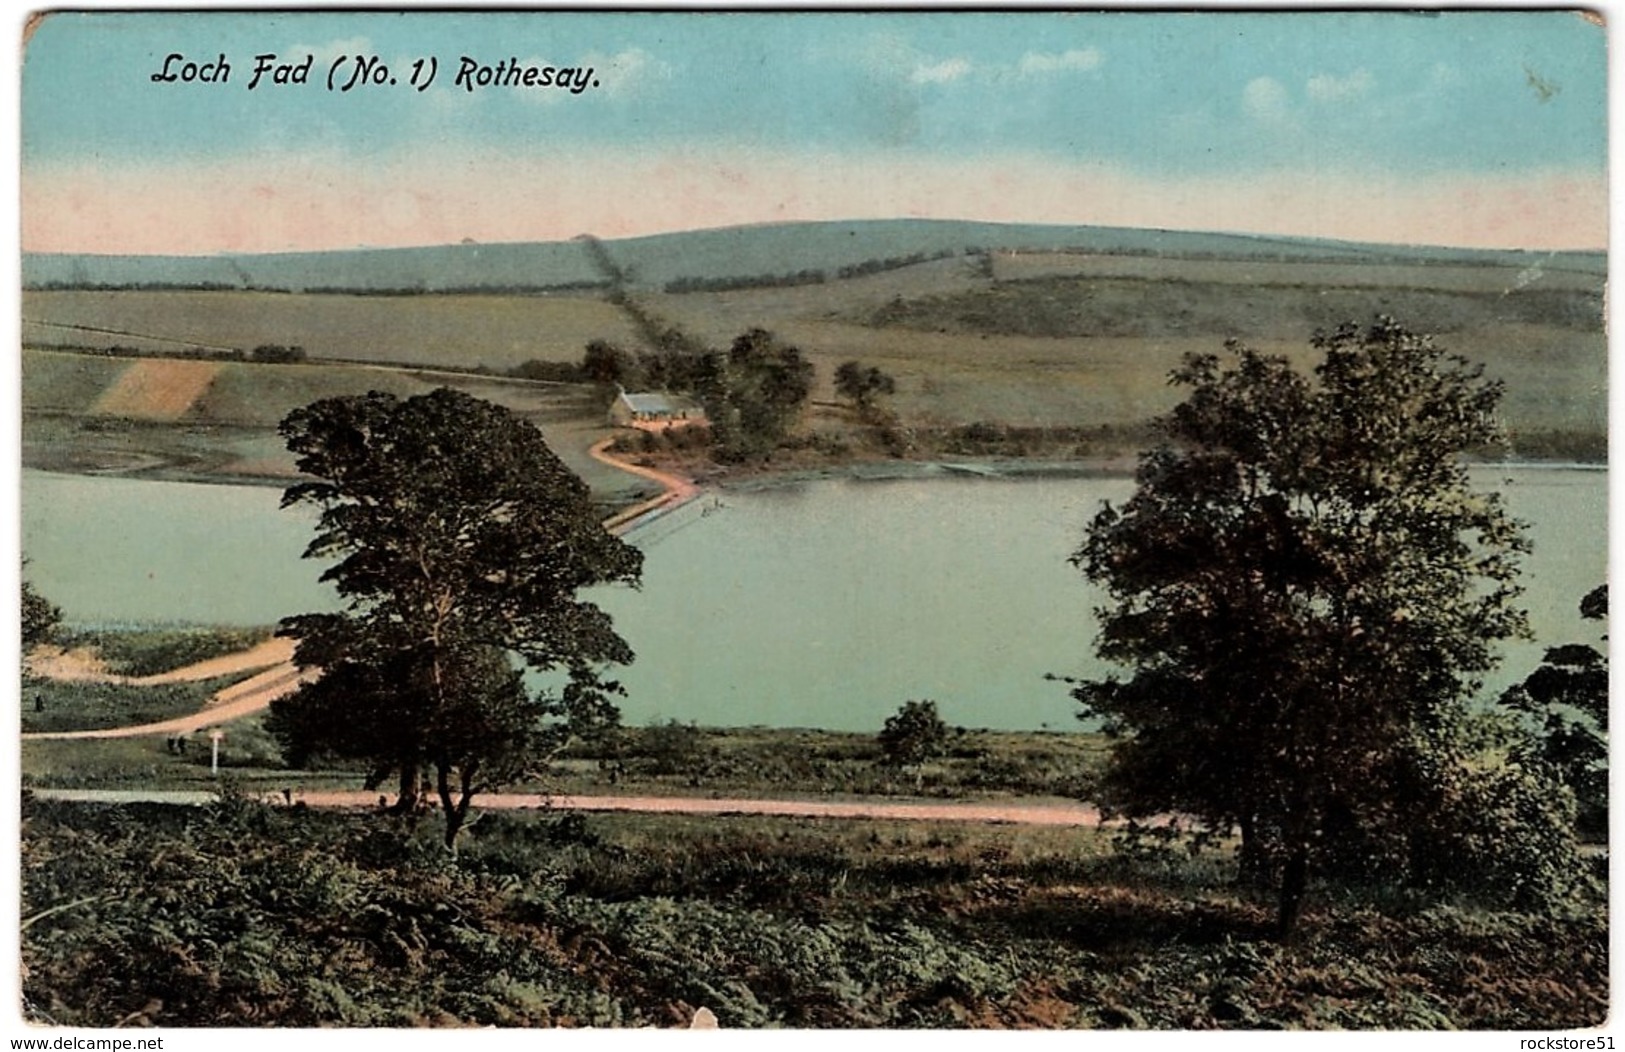 Loch Fad Rothesay - Bute